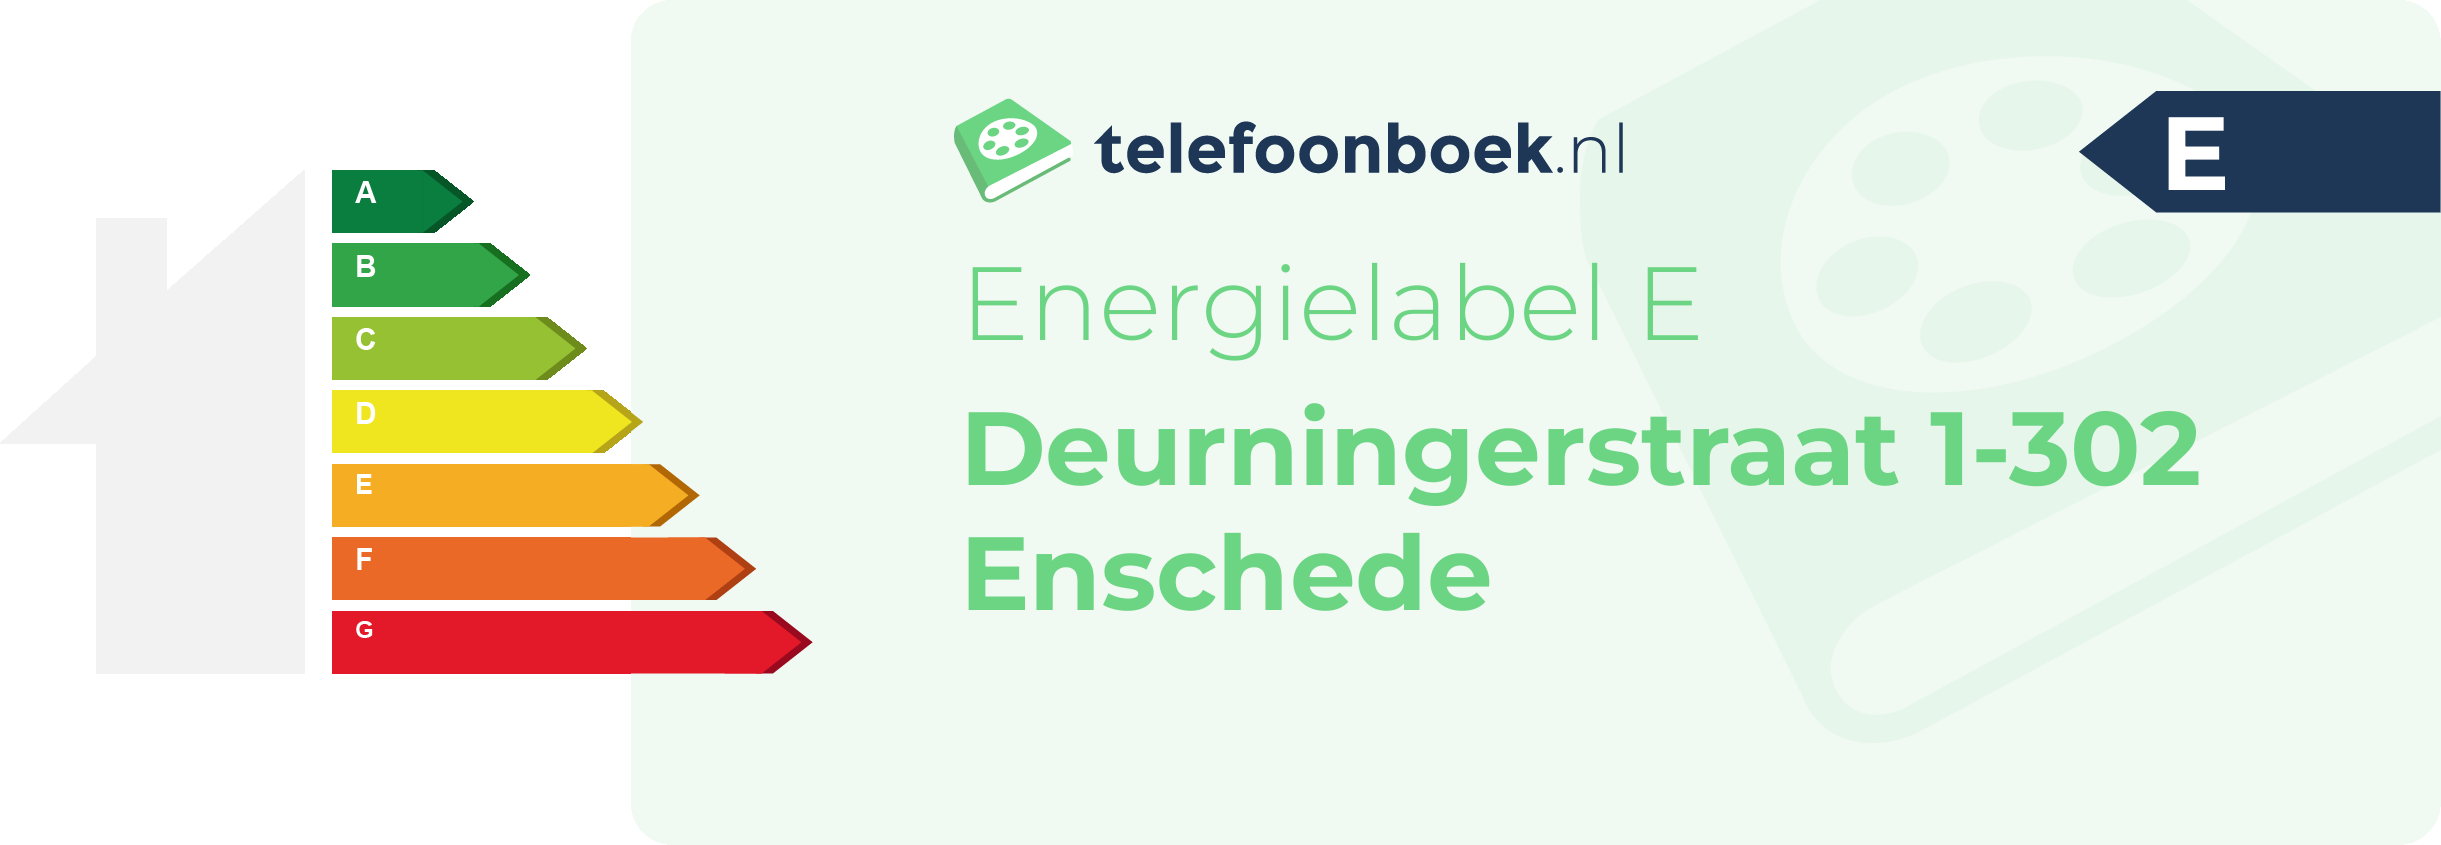 Energielabel Deurningerstraat 1-302 Enschede